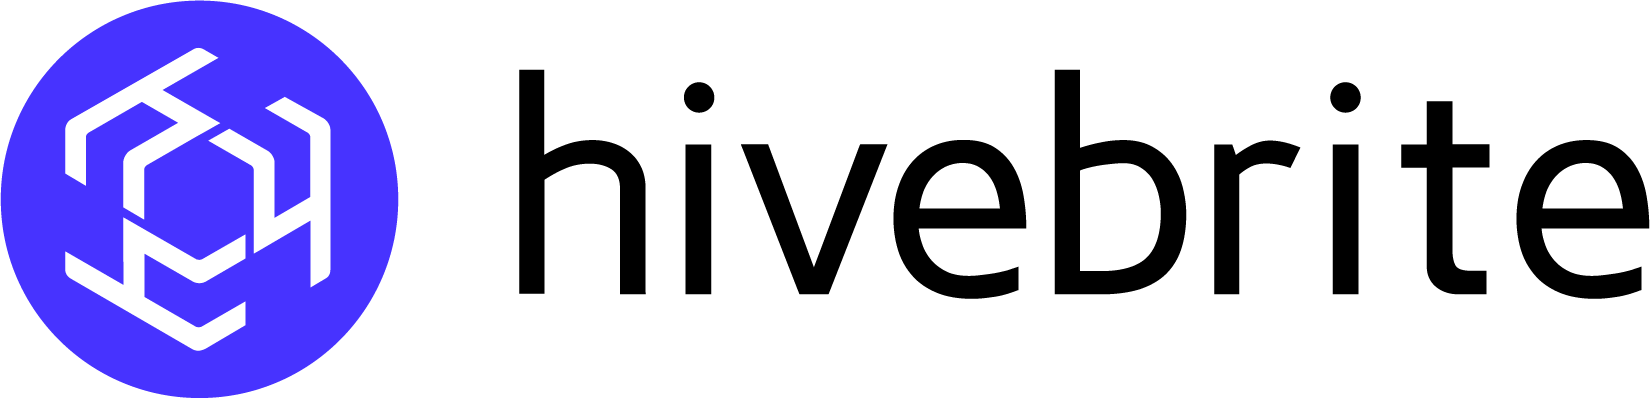 hivebrite-logo (2) (1)